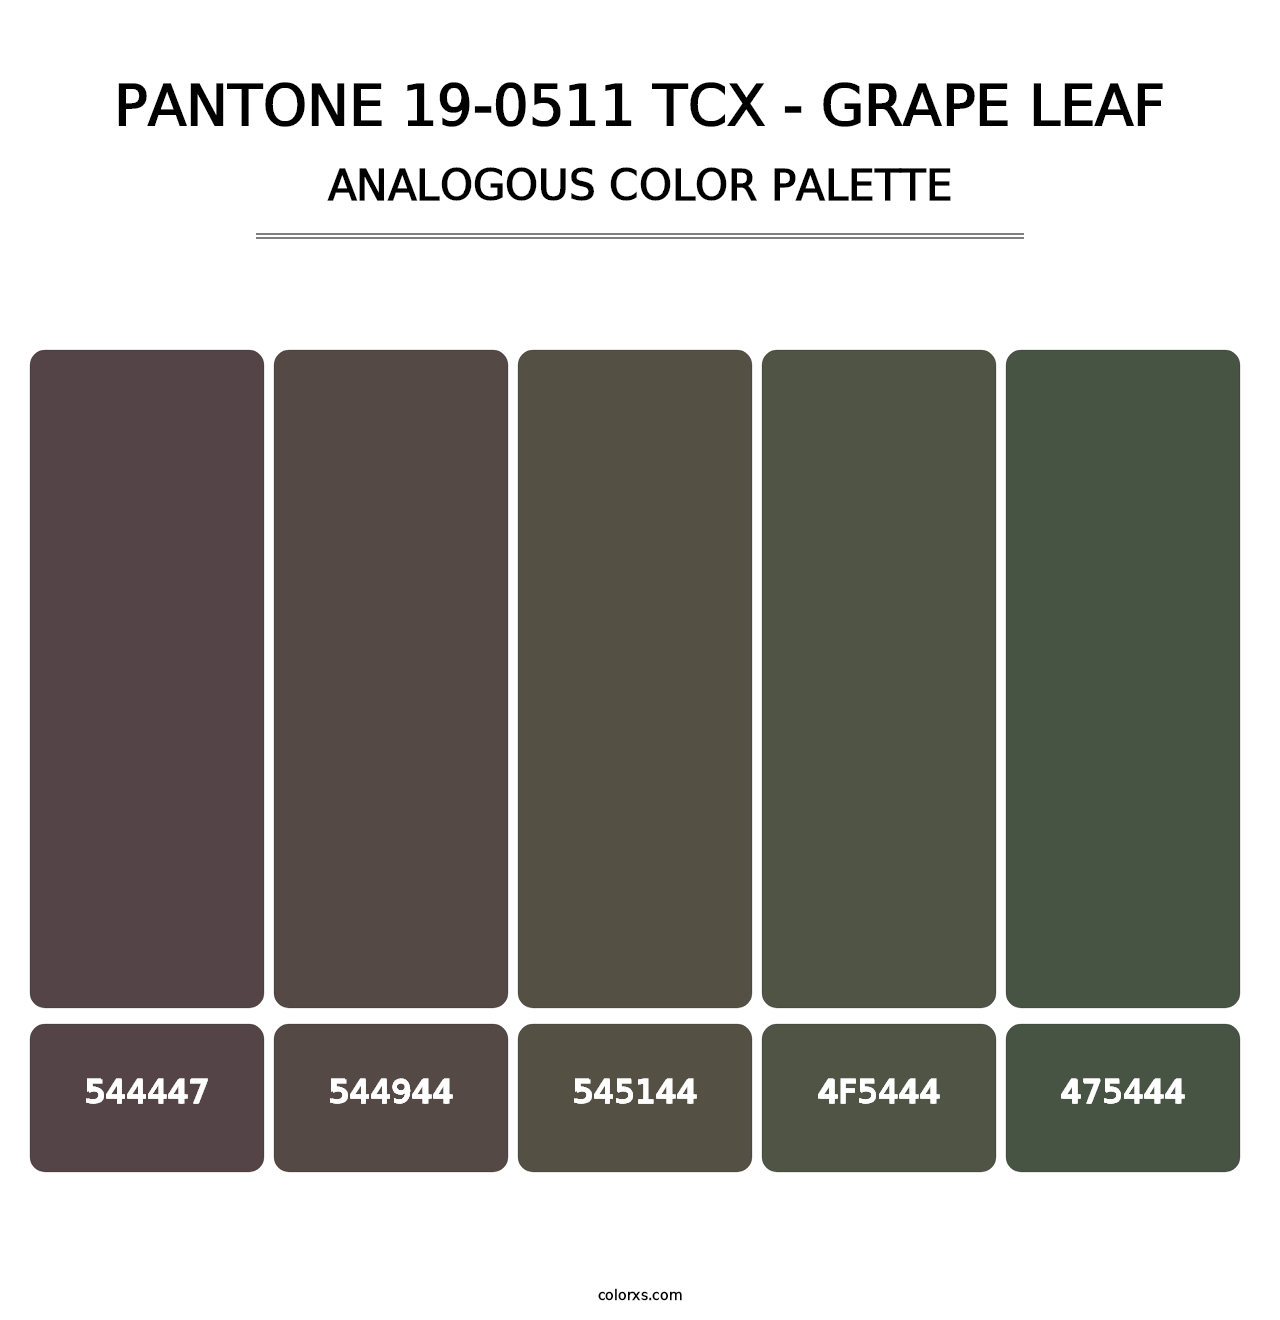 PANTONE 19-0511 TCX - Grape Leaf - Analogous Color Palette